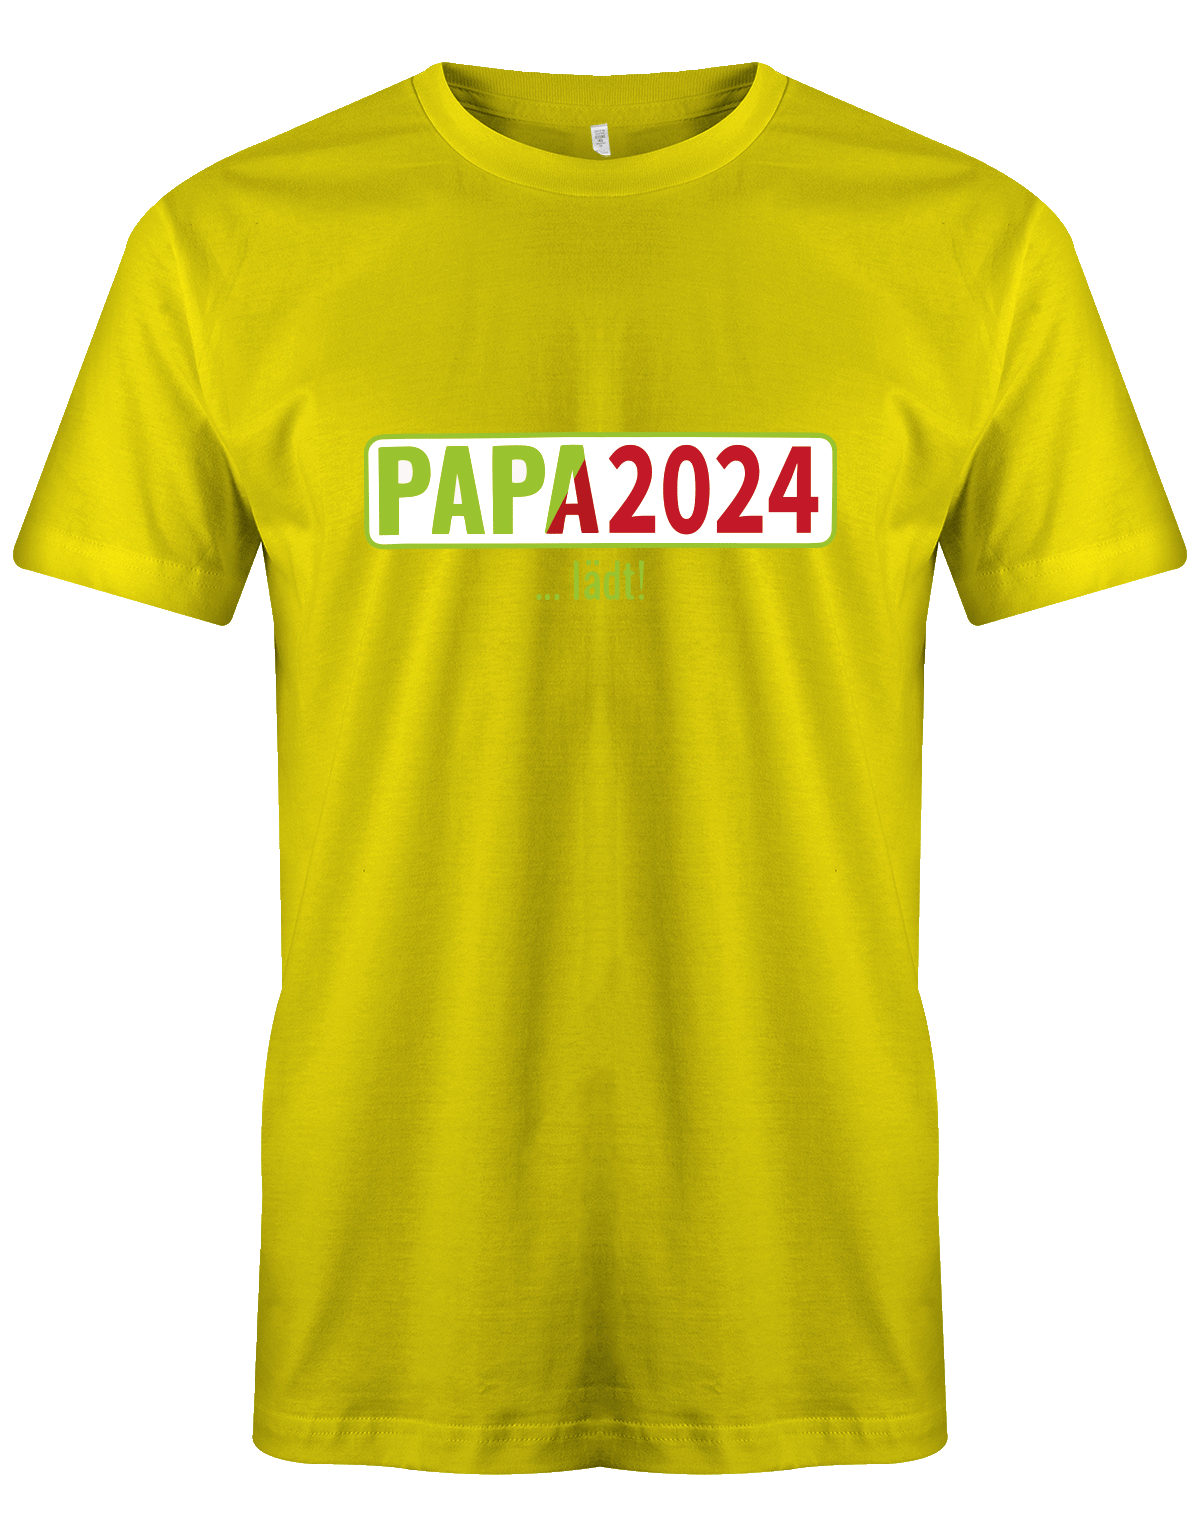 Papa 2024 lädt - loading - Werdender Papa Shirt Herren gelb